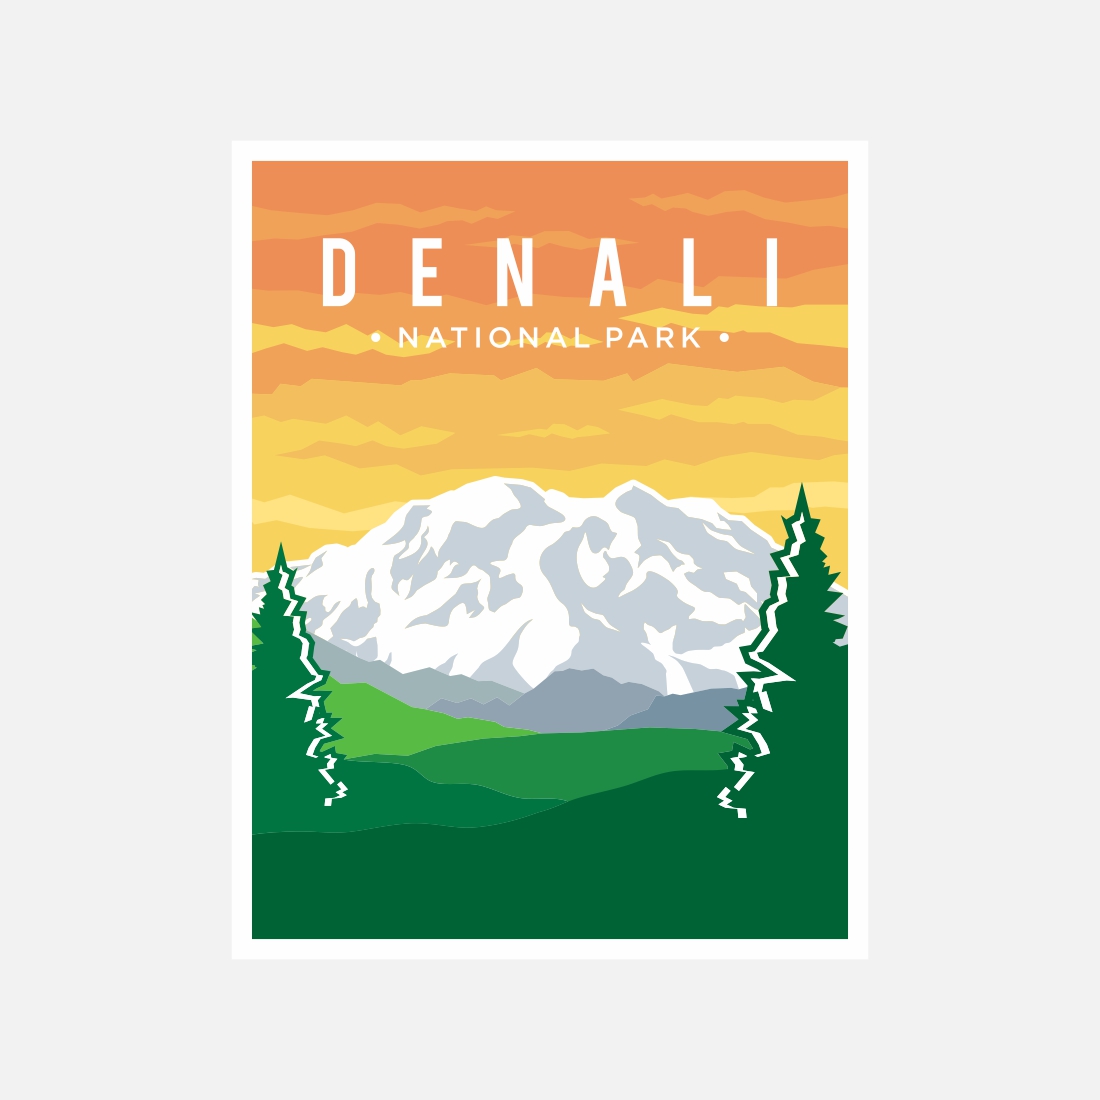 Denali National Park poster vector illustration design – Only $8 preview image.